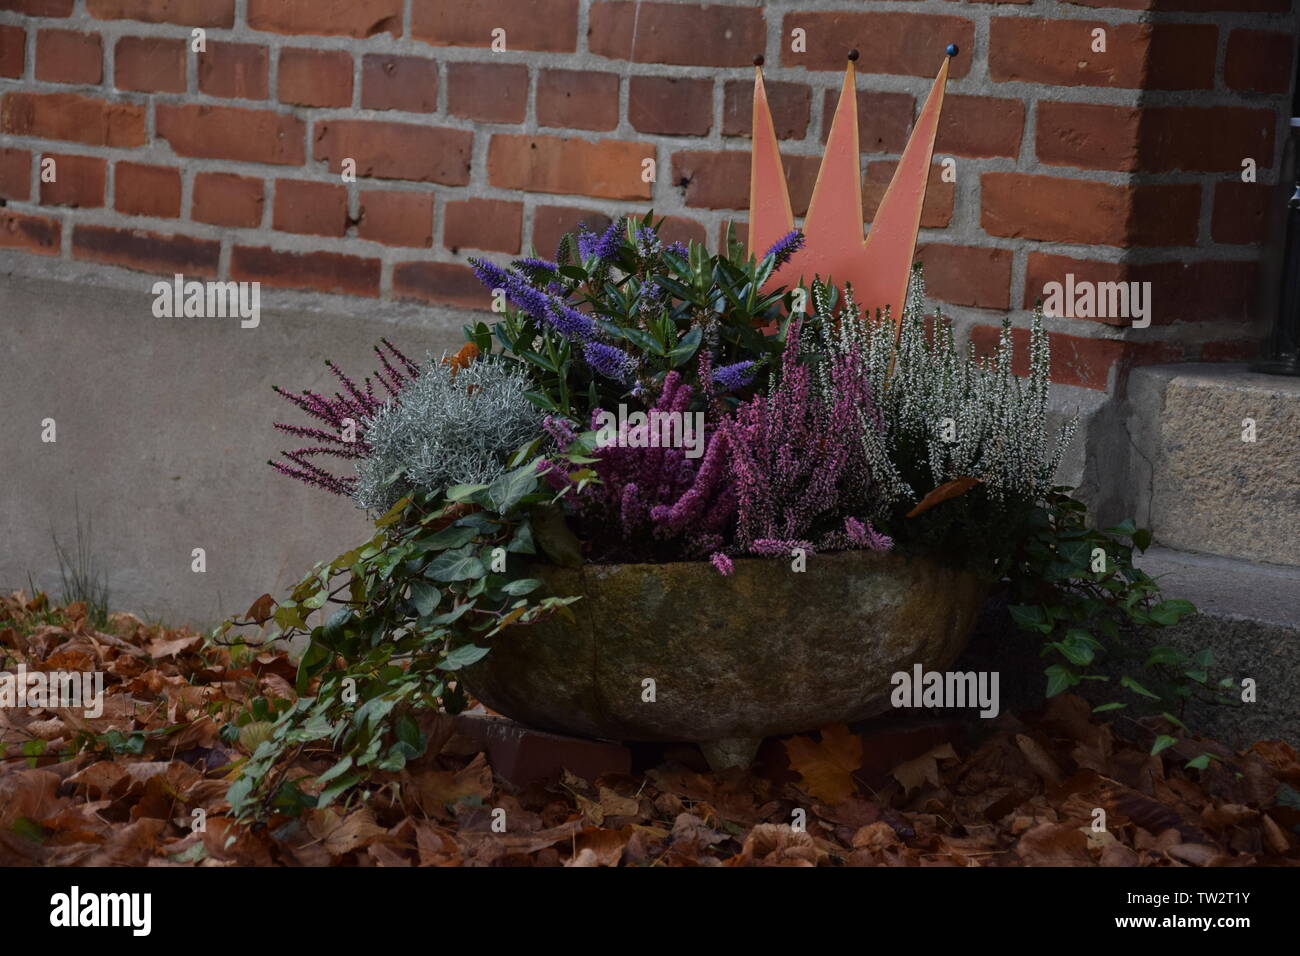 Blumentopf vor einer Hauswand mit Laub im Vordergrund Foto Stock